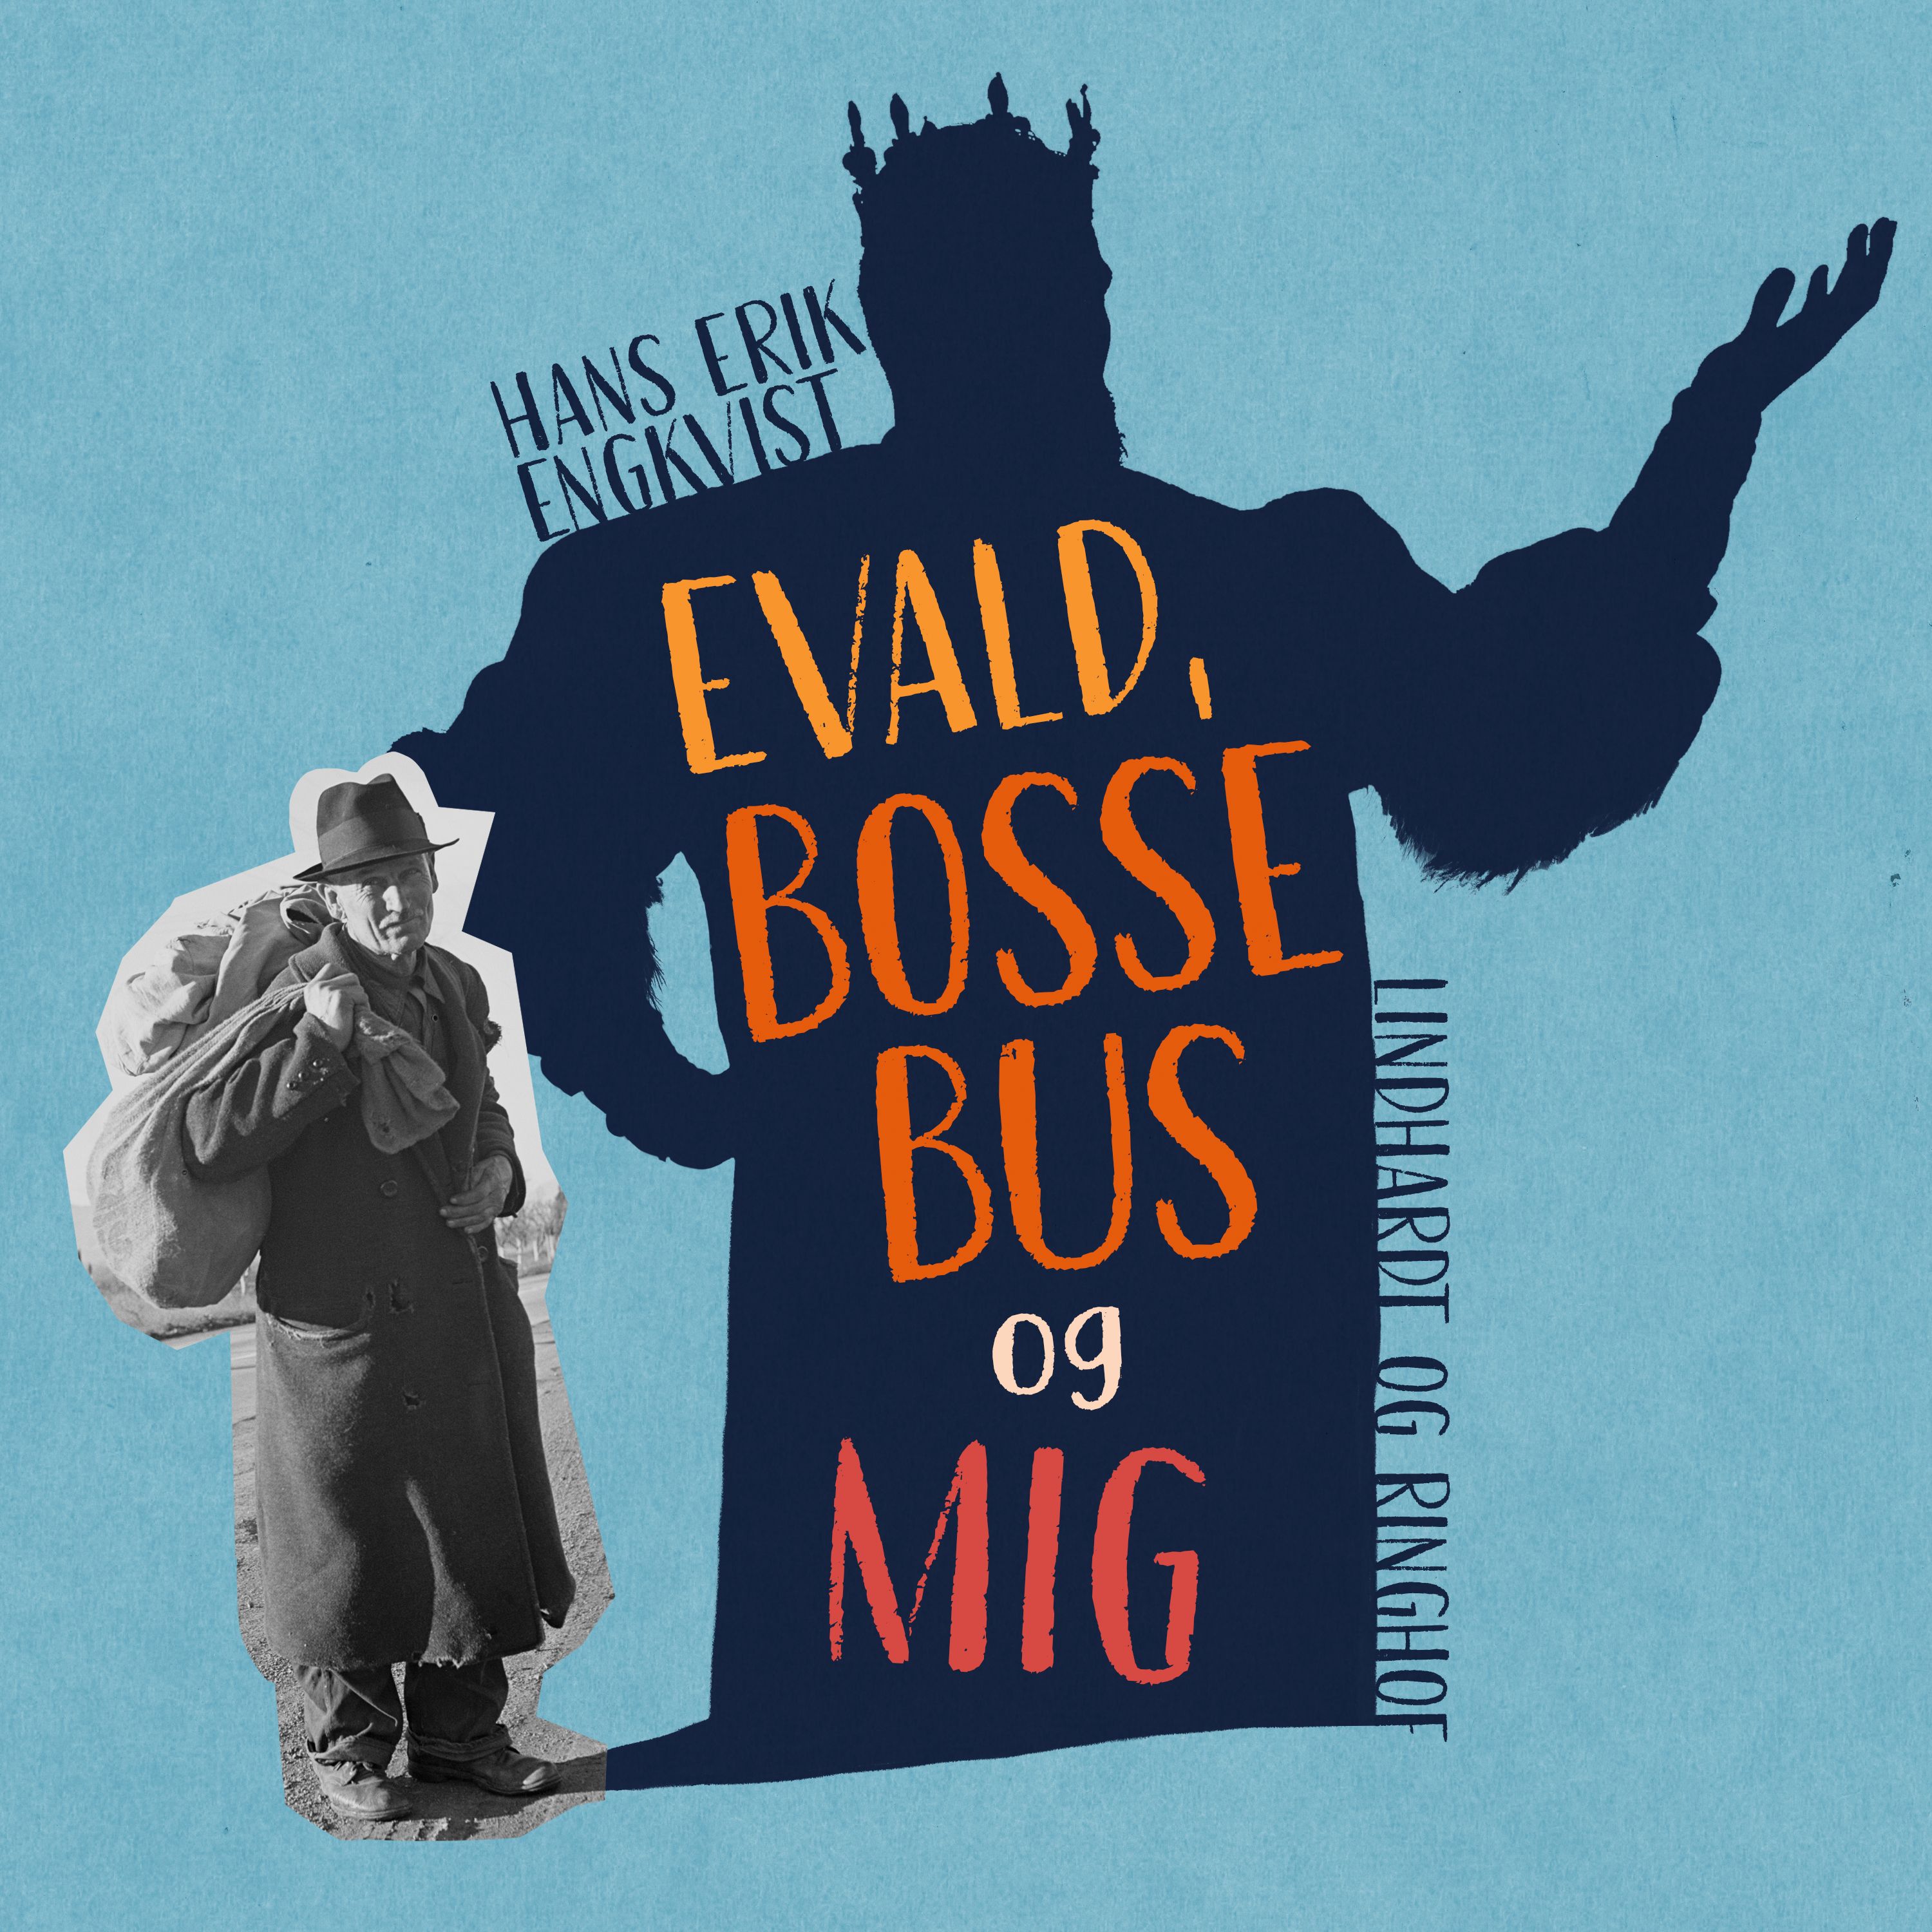 Evald, Bosse Bus og mig, lydbog af Hans Erik Engqvist